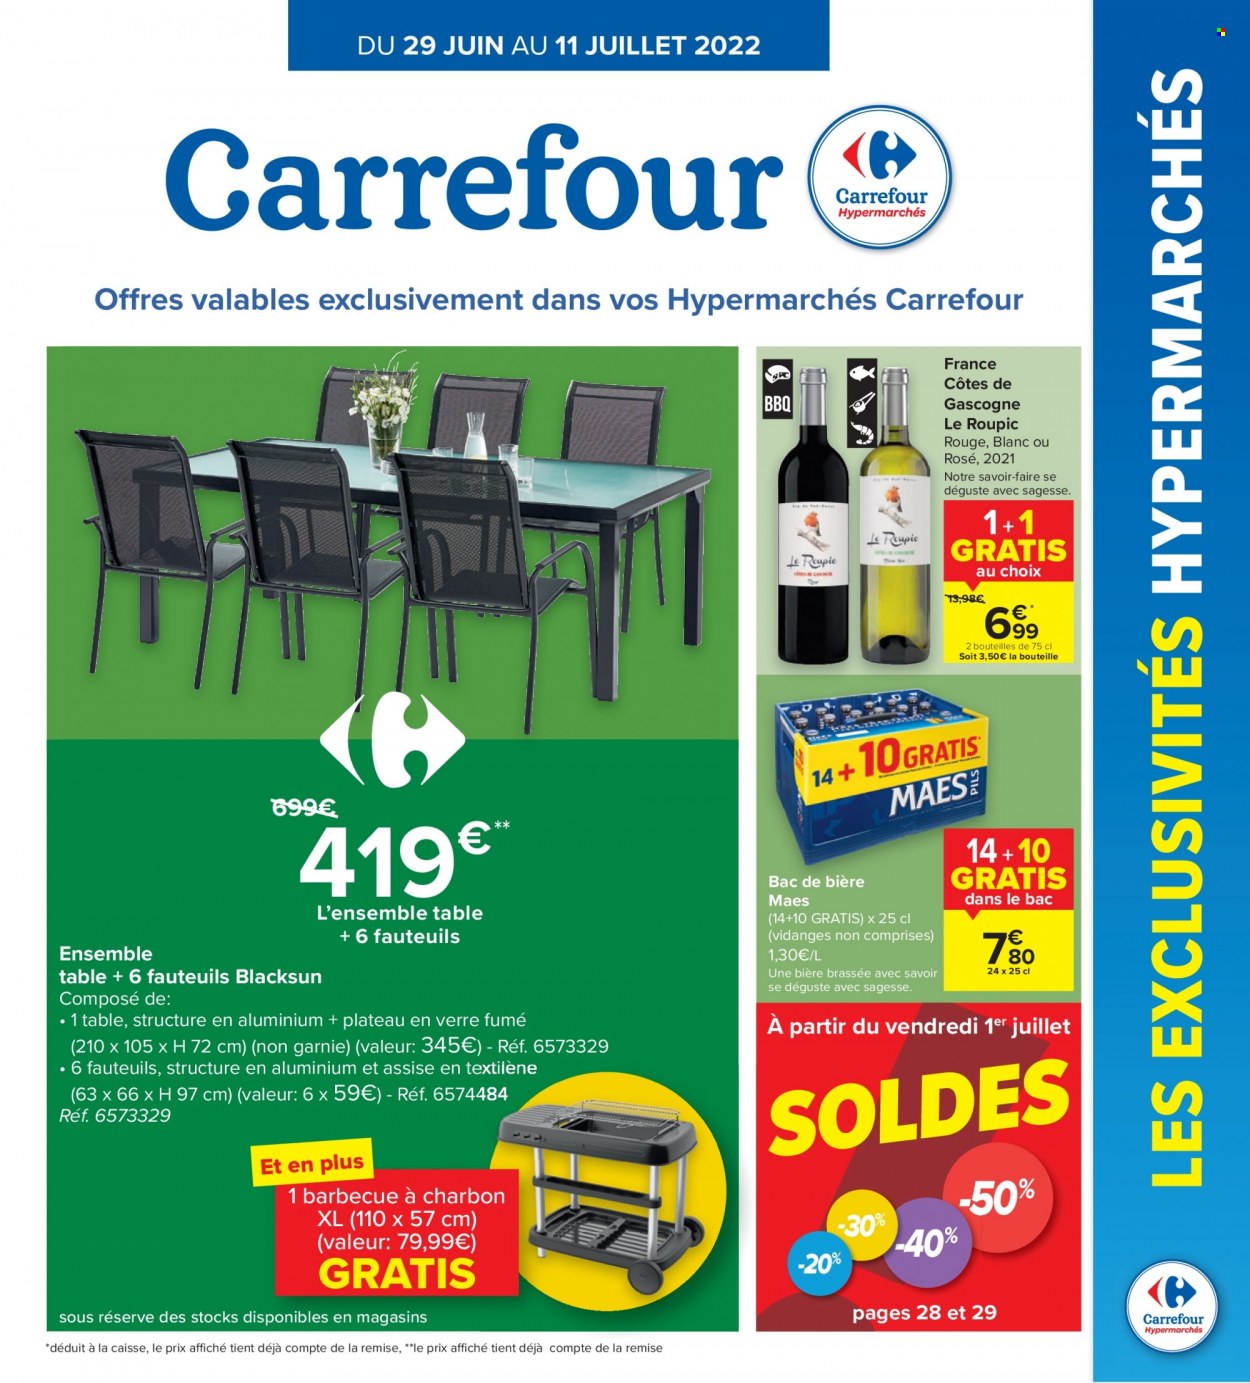 thumbnail - Catalogue Carrefour hypermarkt - 29/06/2022 - 11/07/2022 - Produits soldés - Côtes de Gascogne, table, barbecue. Page 1.